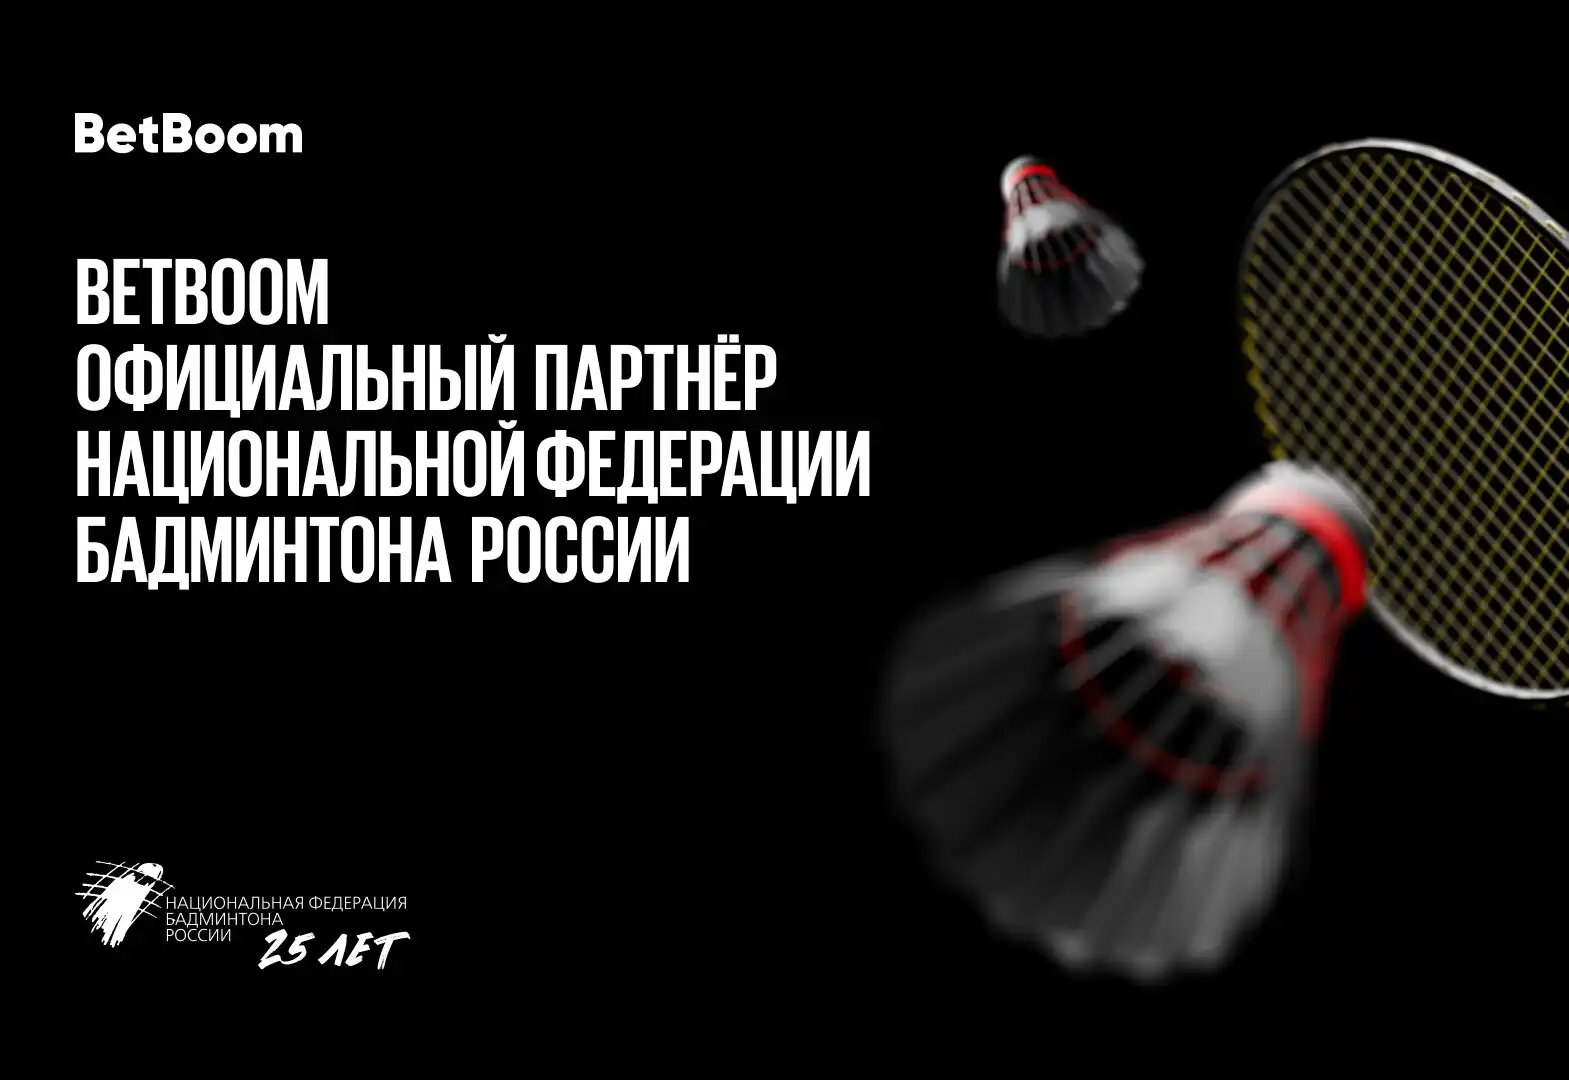 BetBoom объявил о партнерстве с Национальной Федерацией Бадминтона России